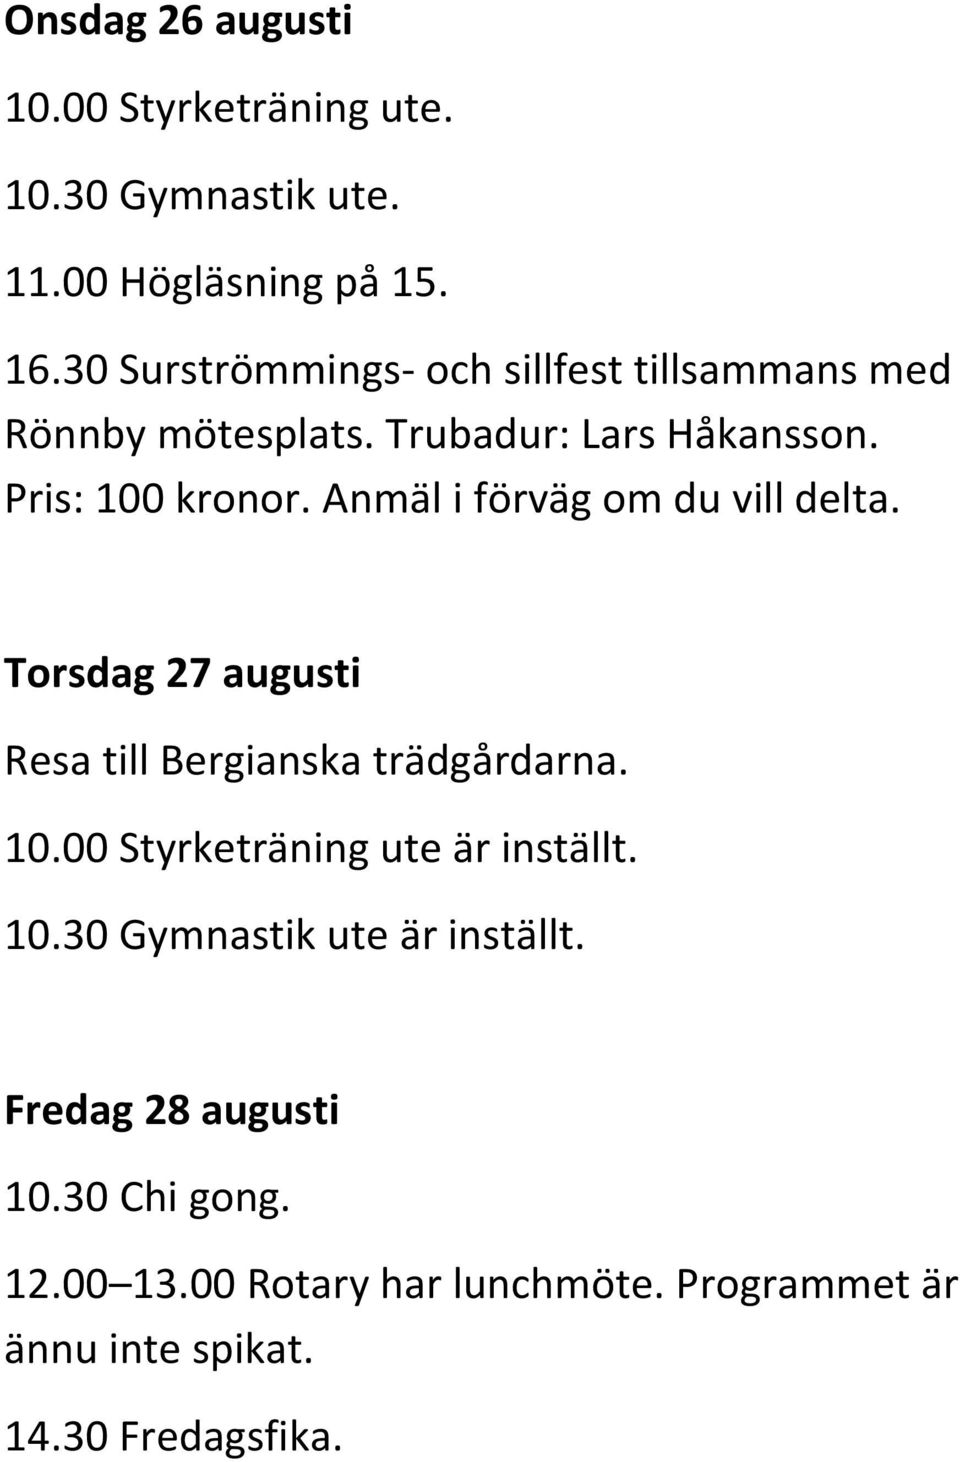 Torsdag 27 augusti Resa till Bergianska trädgårdarna. 10.00 Styrketräning ute är inställt. 10.30 Gymnastik ute är inställt.